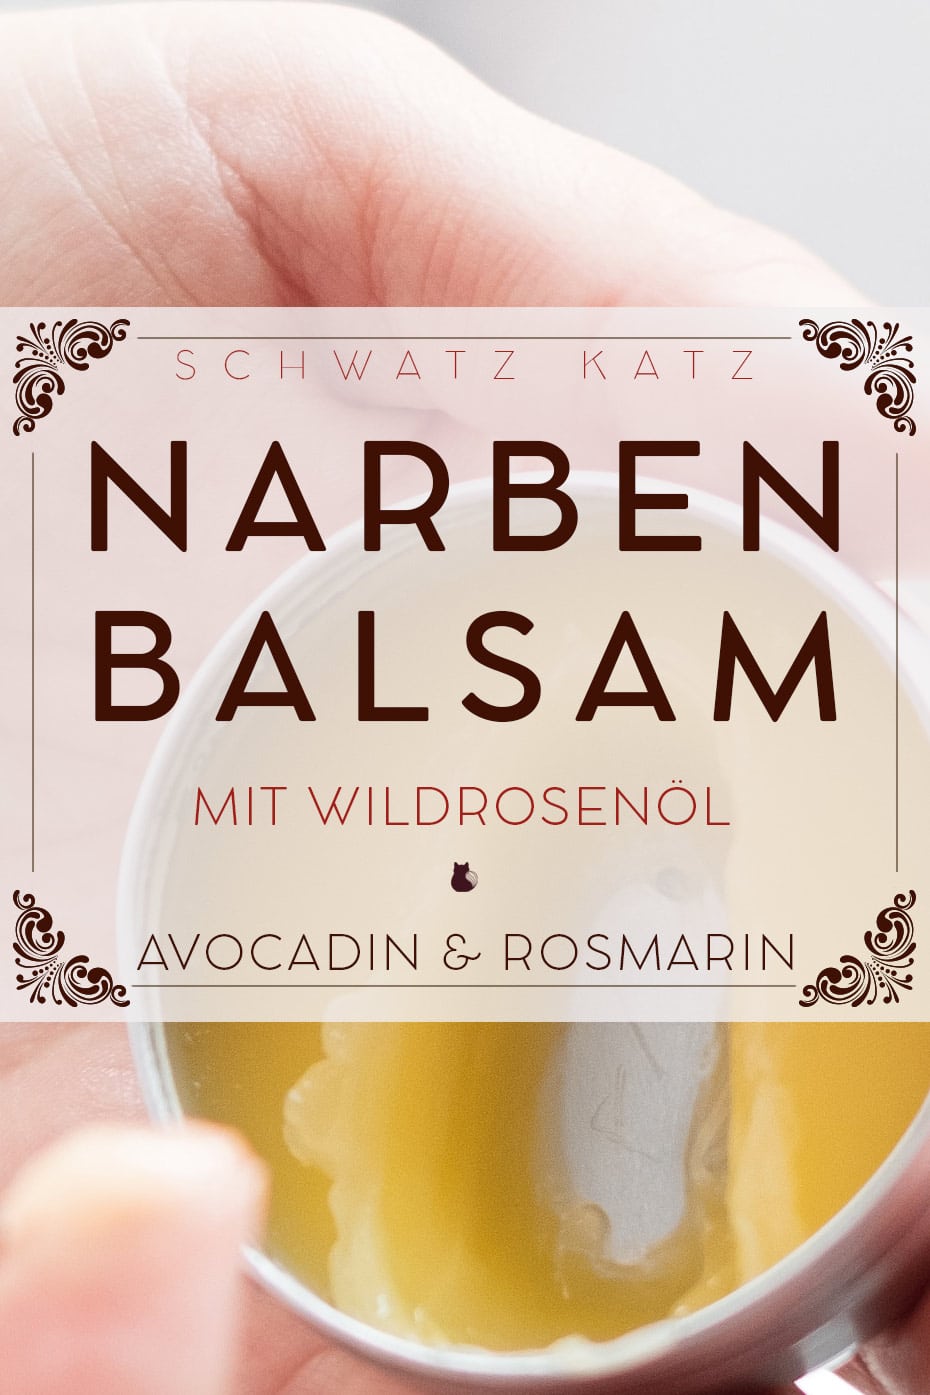 Narbenbalsam mit Wildrosenöl und Rosmarin | Schwatz Katz